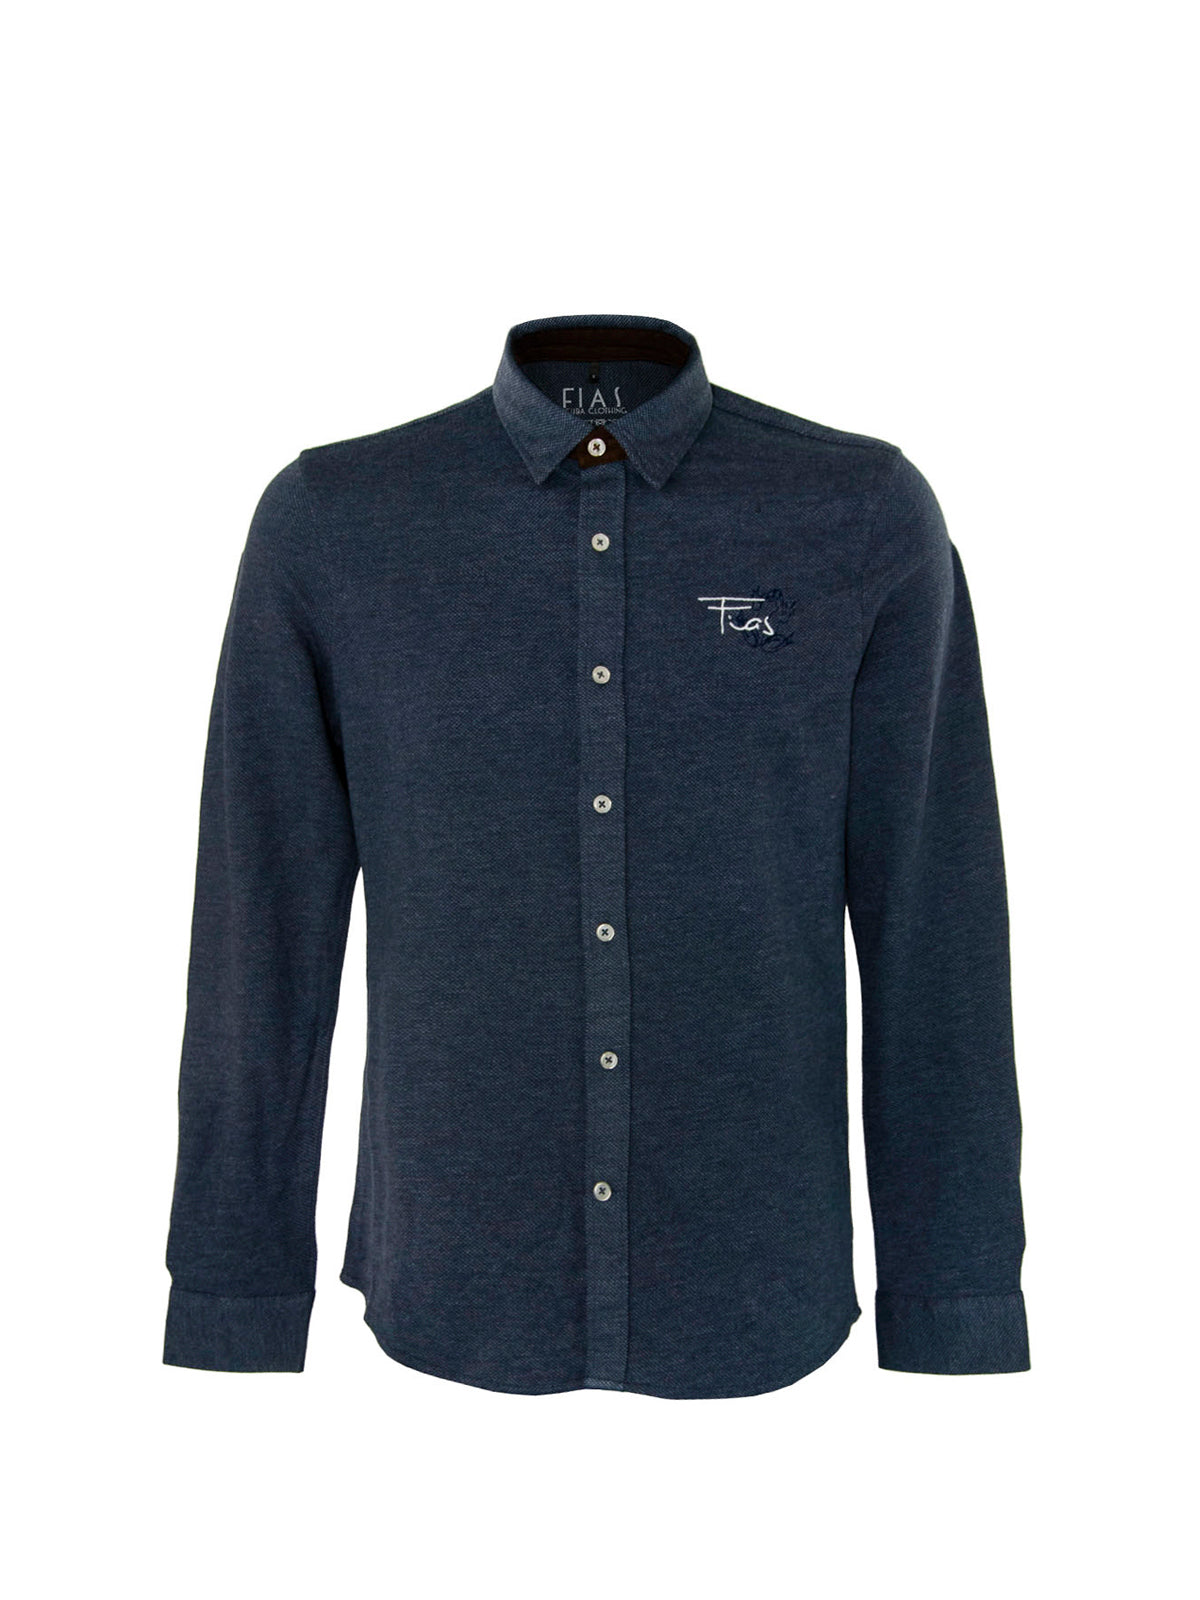 Fias Official Shirt Jacquard Blue